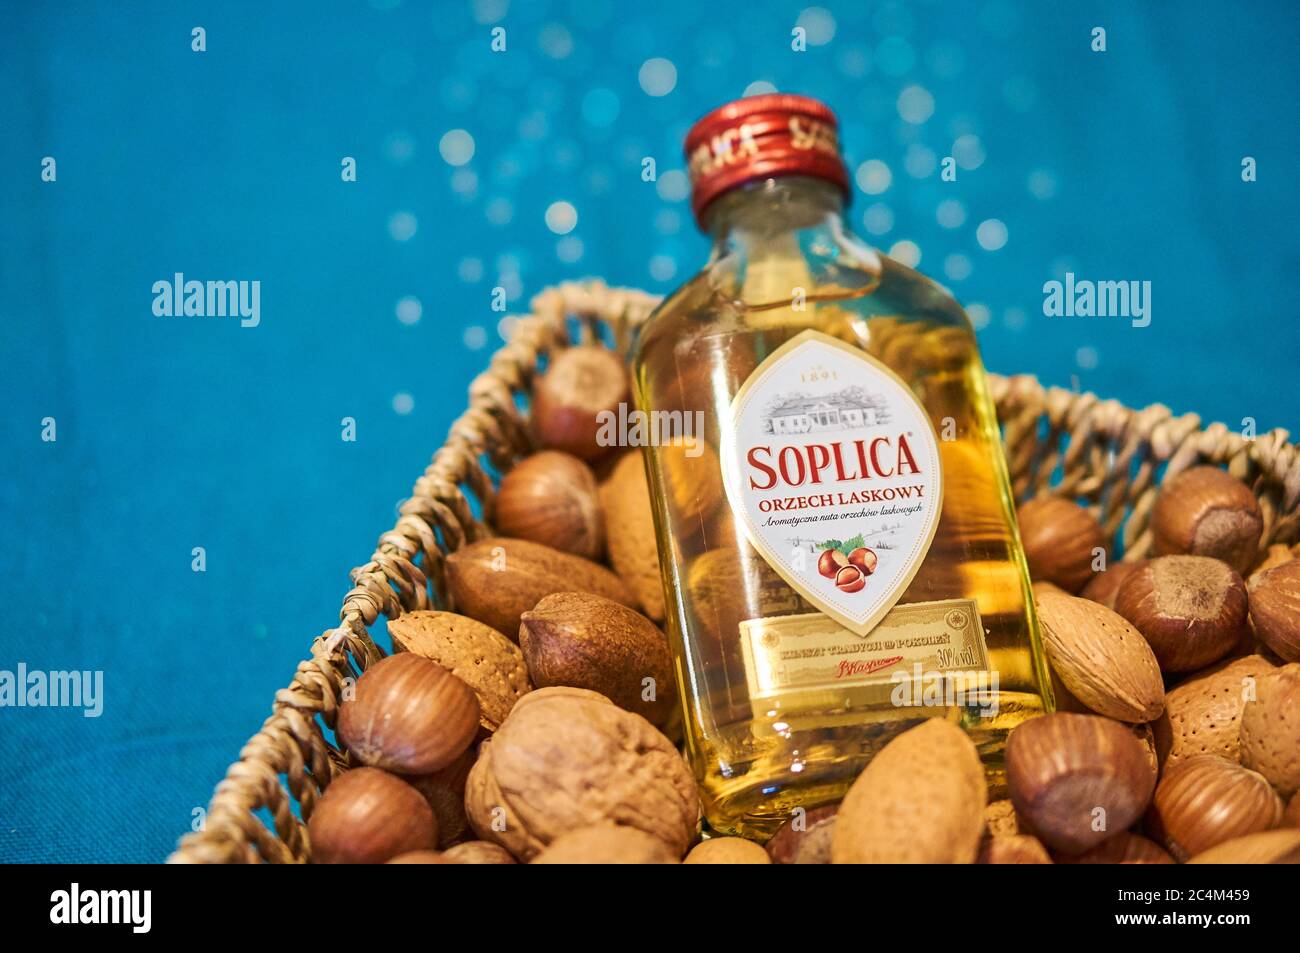 POSEN, POLEN - 05. Dez 2017: Polnischer Soplica Wodka mit  Haselnussgeschmack in einer Flasche, die mit Nüssen in einen Korb gelegt  wird Stockfotografie - Alamy